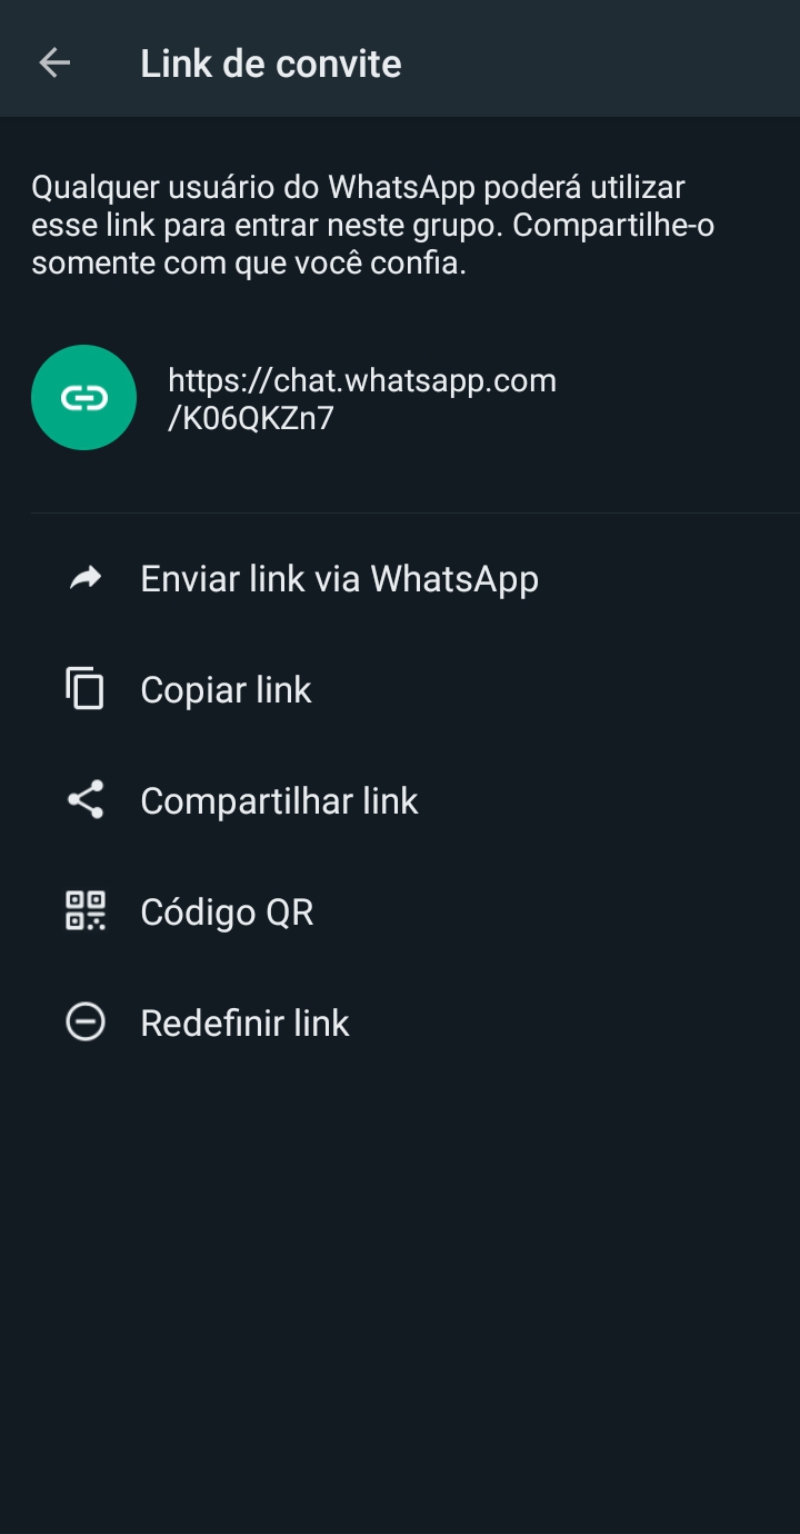 Convidar via link - Como criar links do WhatsApp para compartilhar grupos